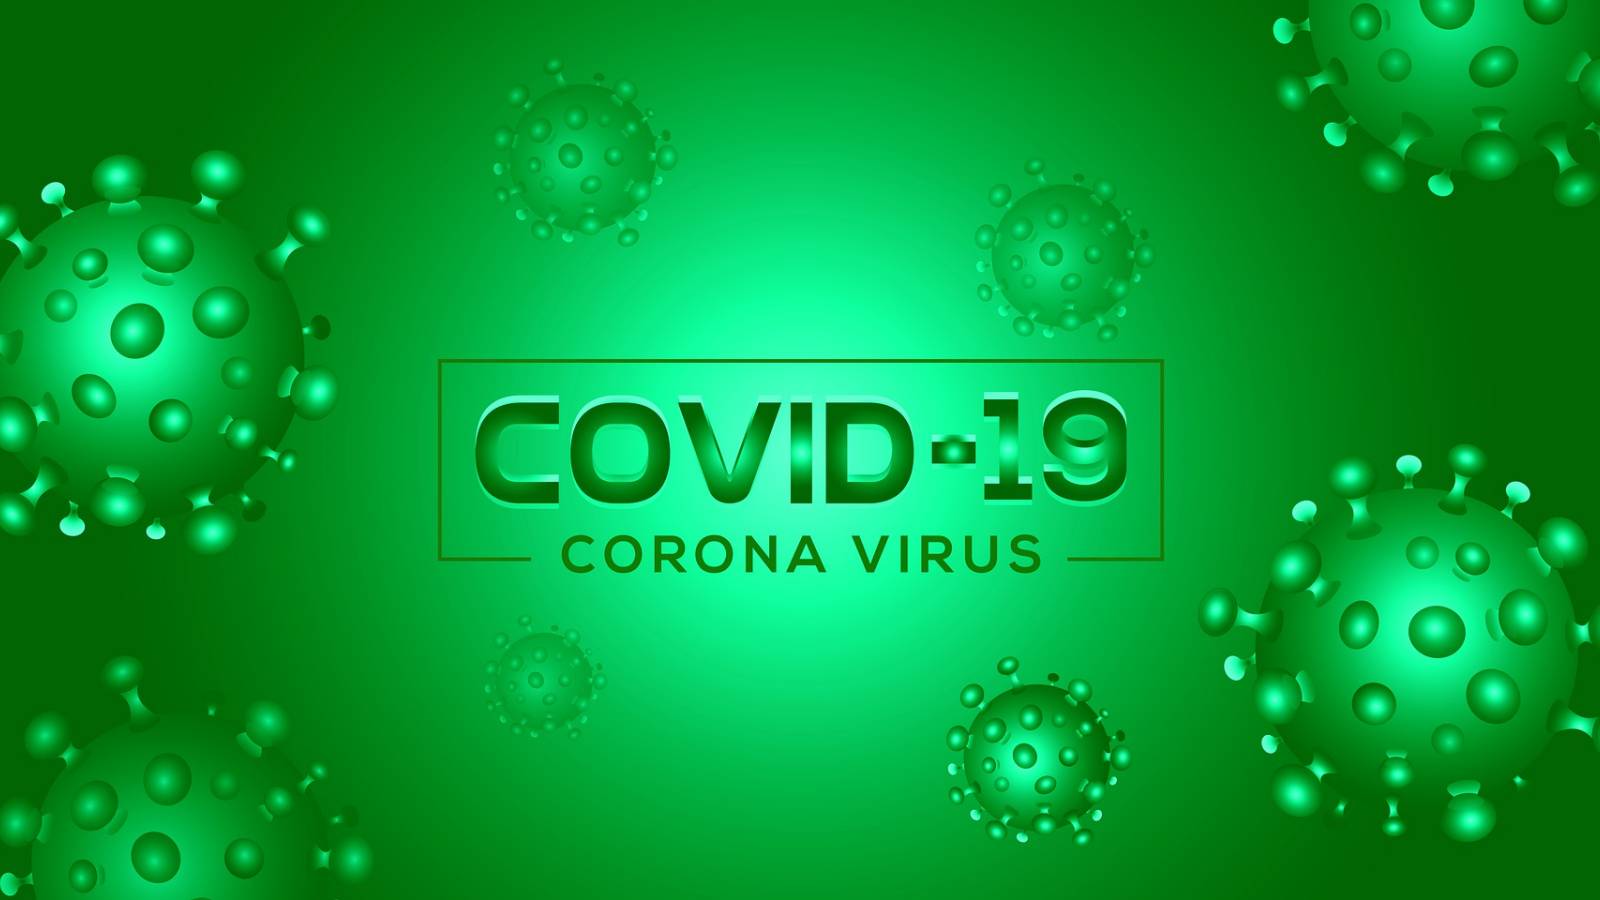 Masca Protectie Previne Infectarea Raspandirea COVID-19